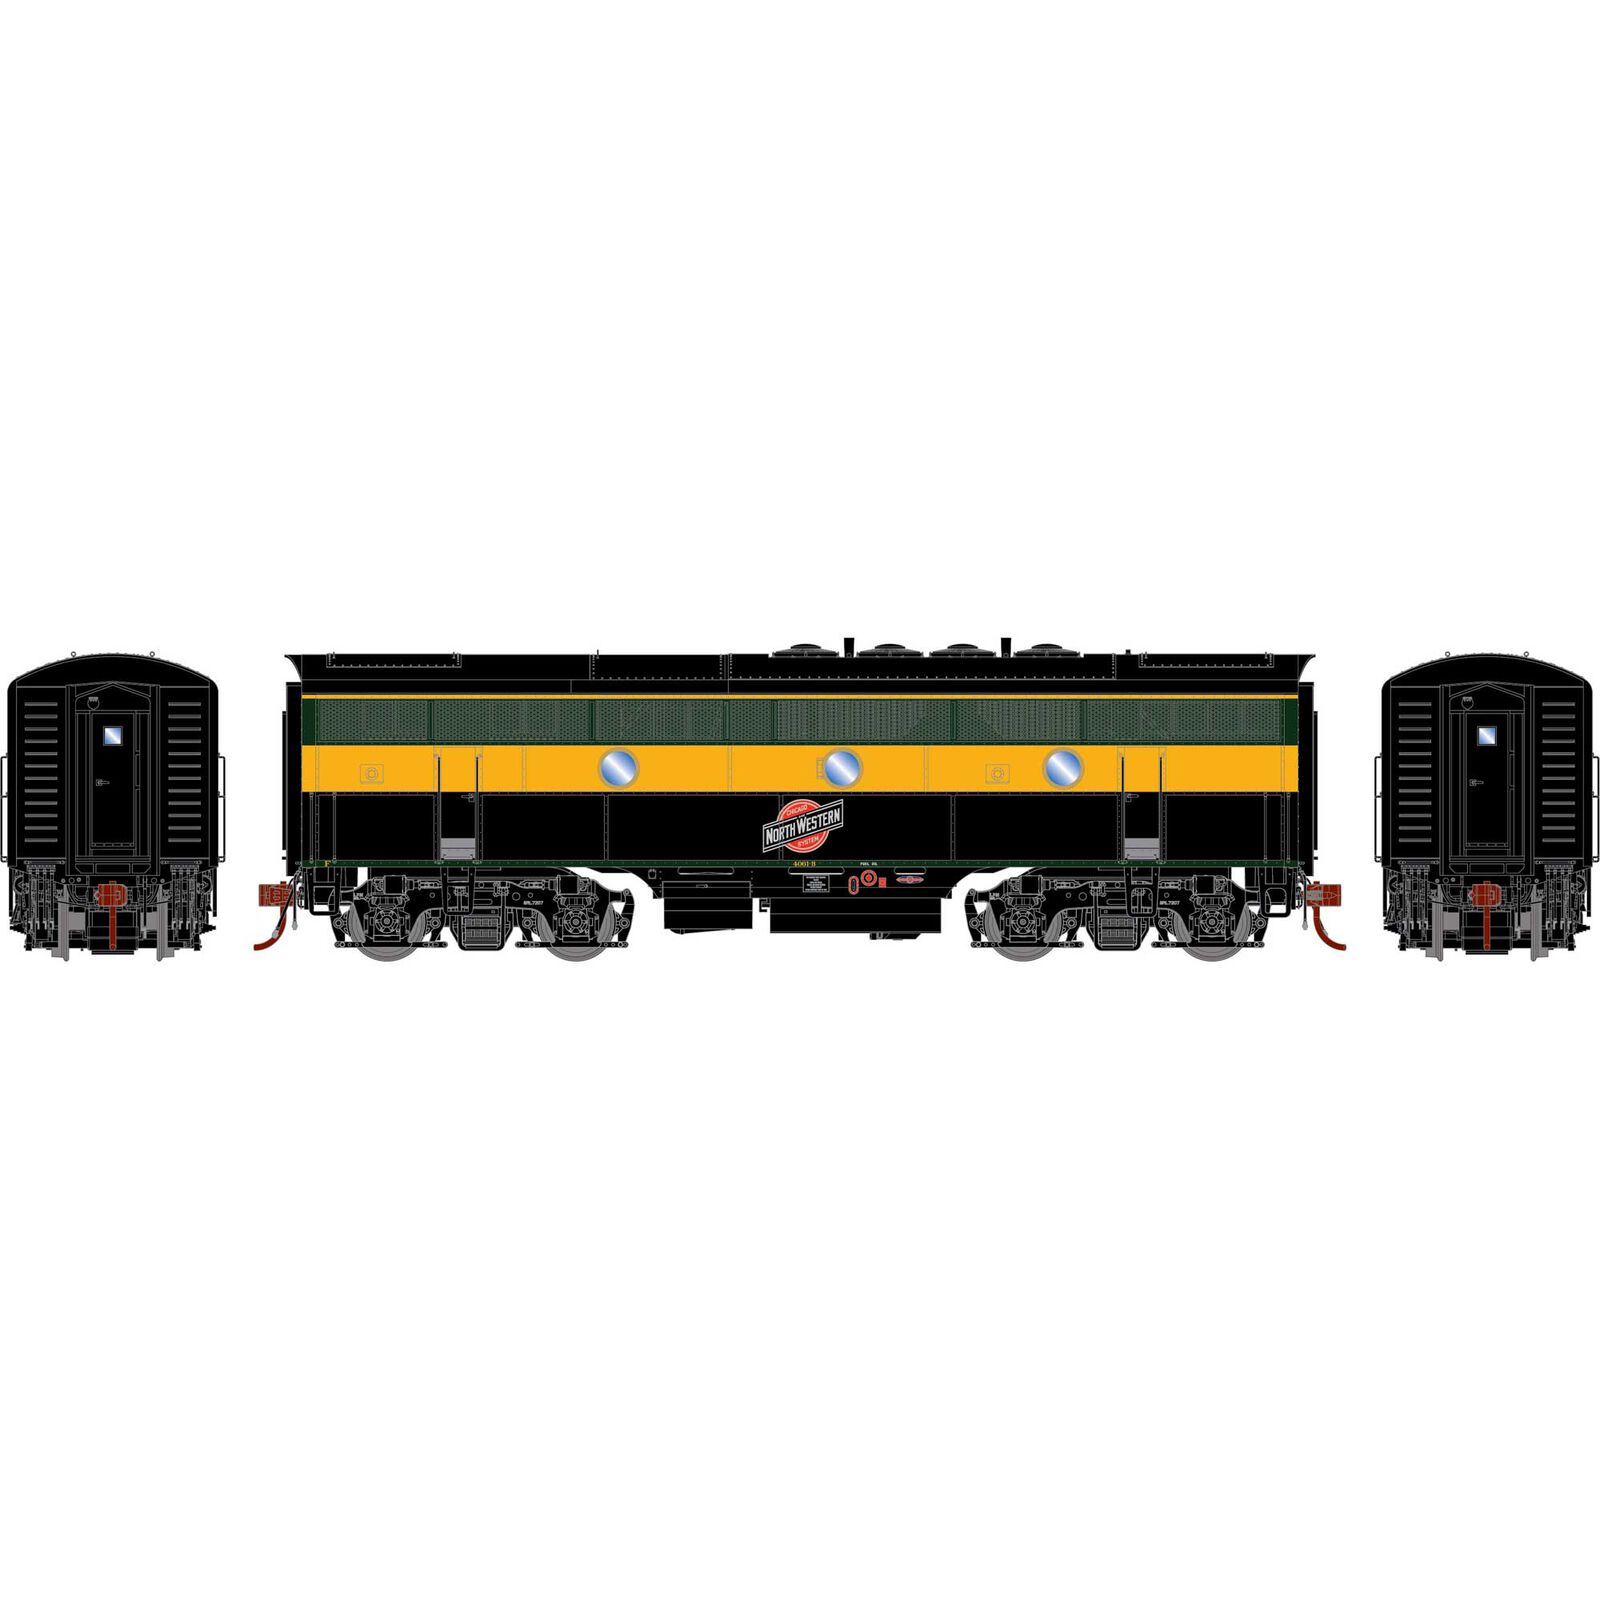 HO F3B Locomotive with DCC & Sound, C&NW #4061-B